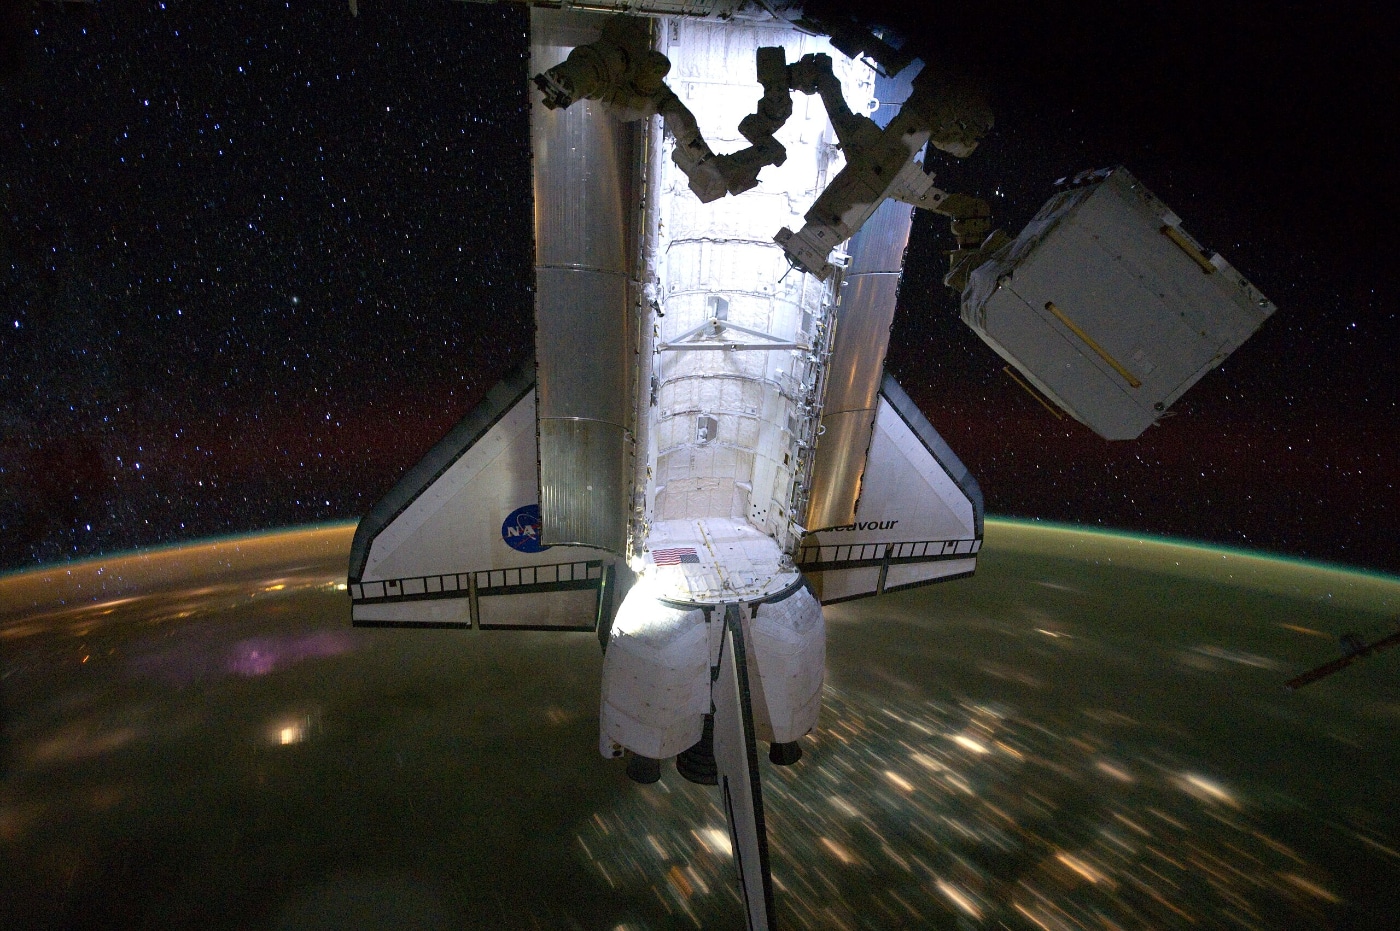 El ‘Endeavour’ y la Estación Espacial Internacional, volando bajo un cielo lleno de estrellas